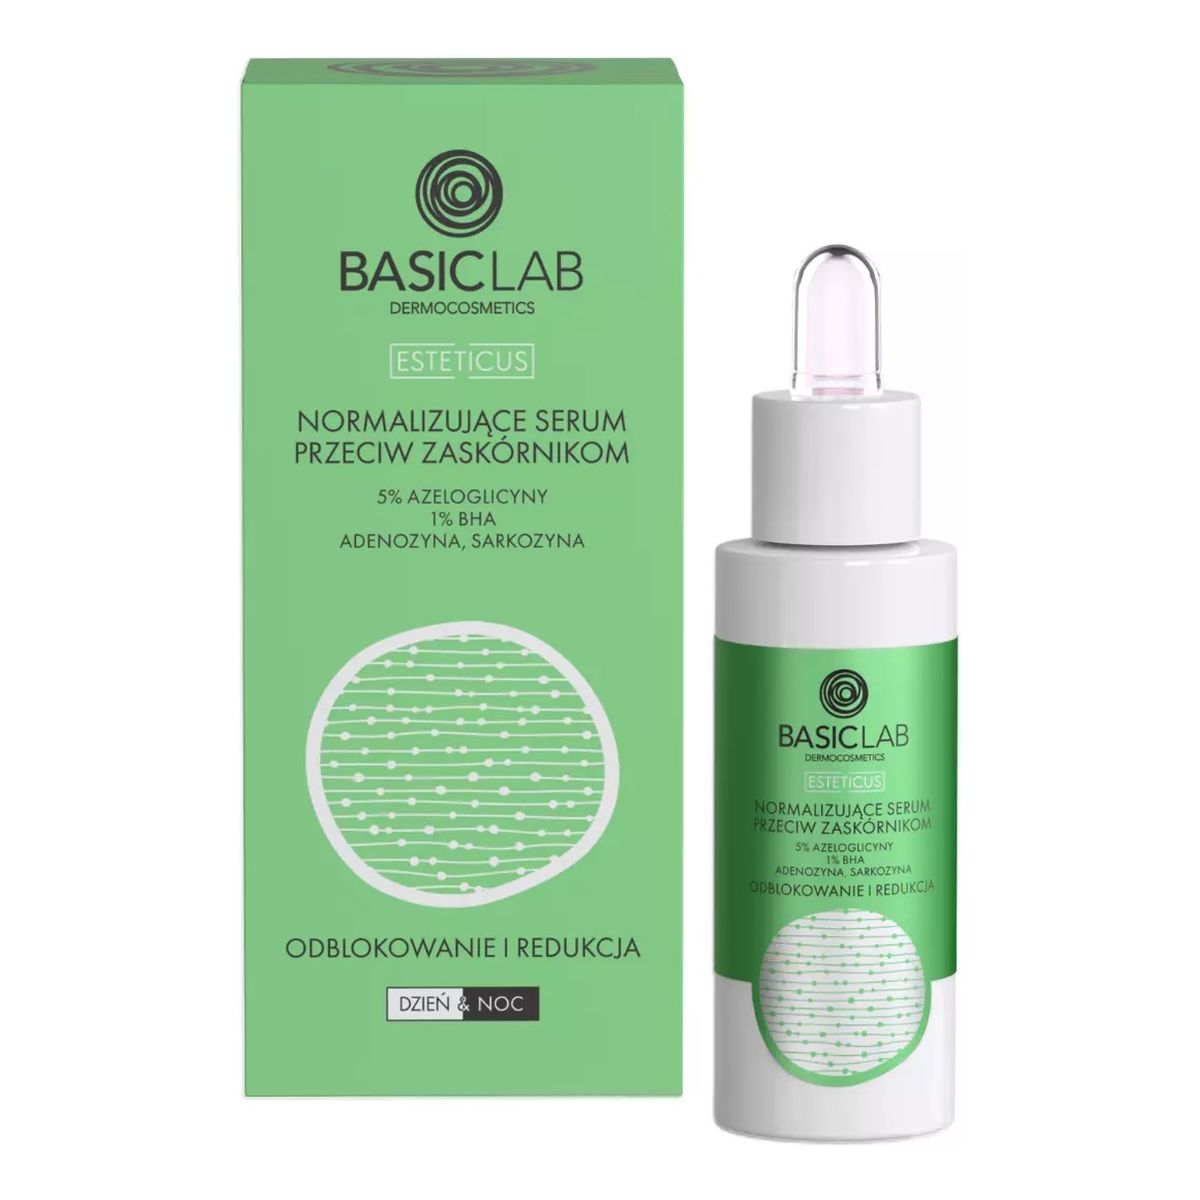 Basiclab Esteticus normalizujące serum przeciw zaskórnikom z 5% azeloglicyny i 1% bha 30ml